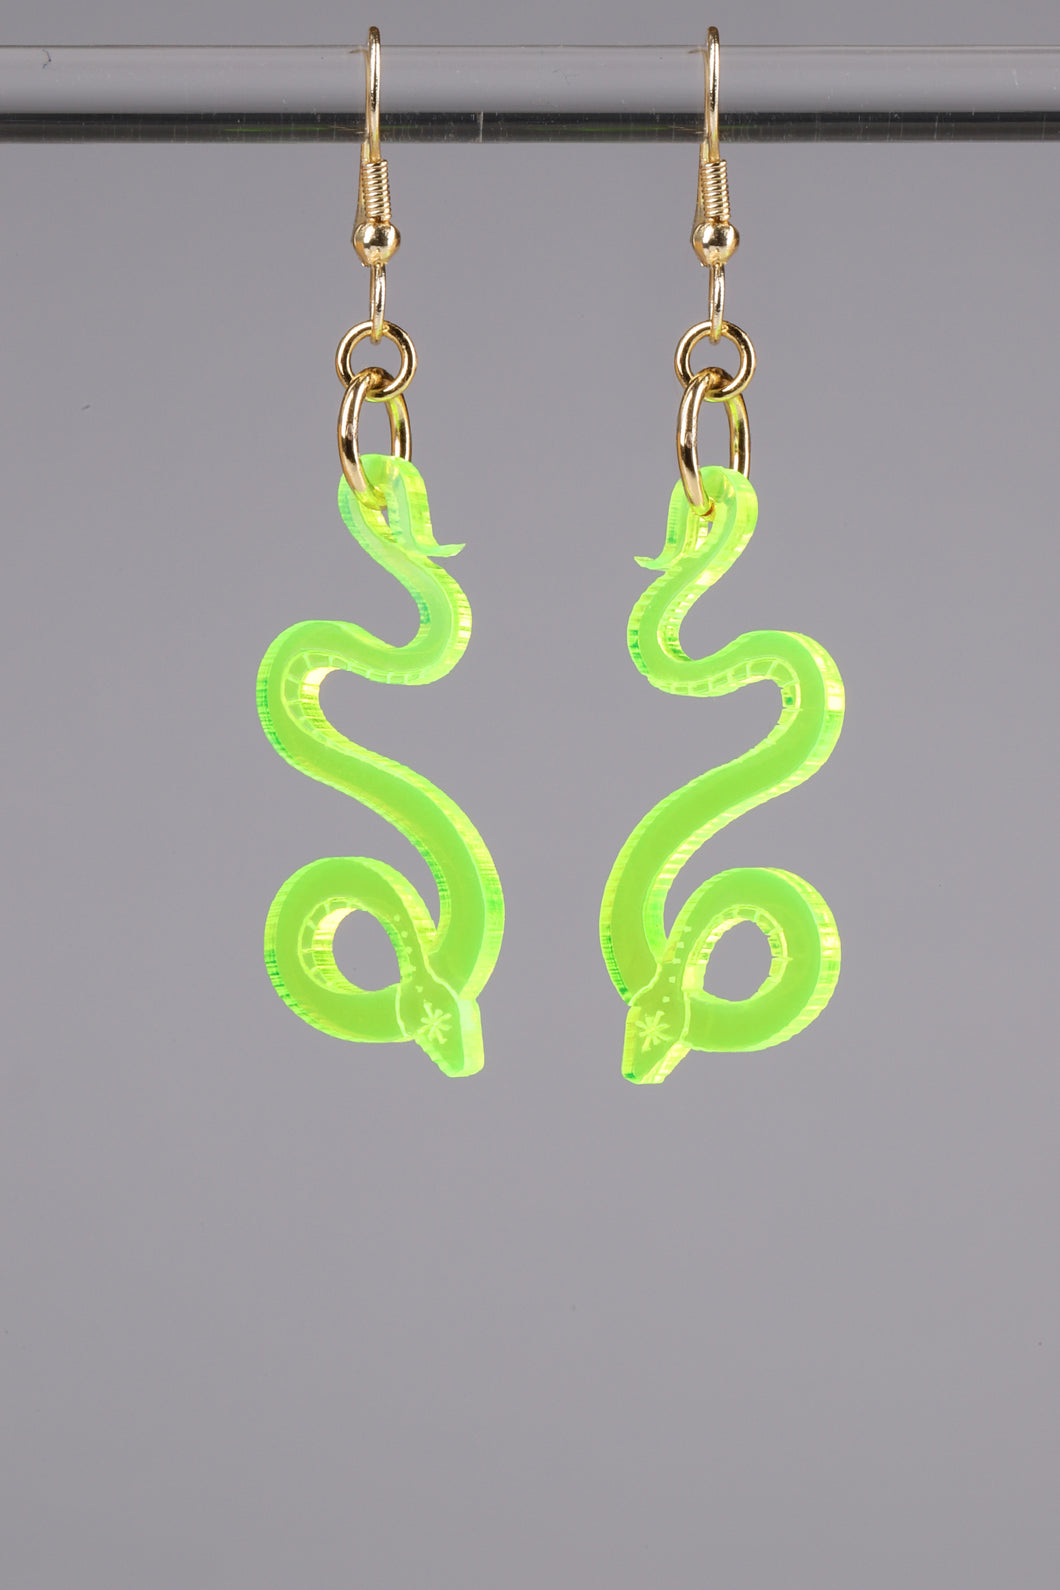 Small Serpentine Earrings - Neon Green